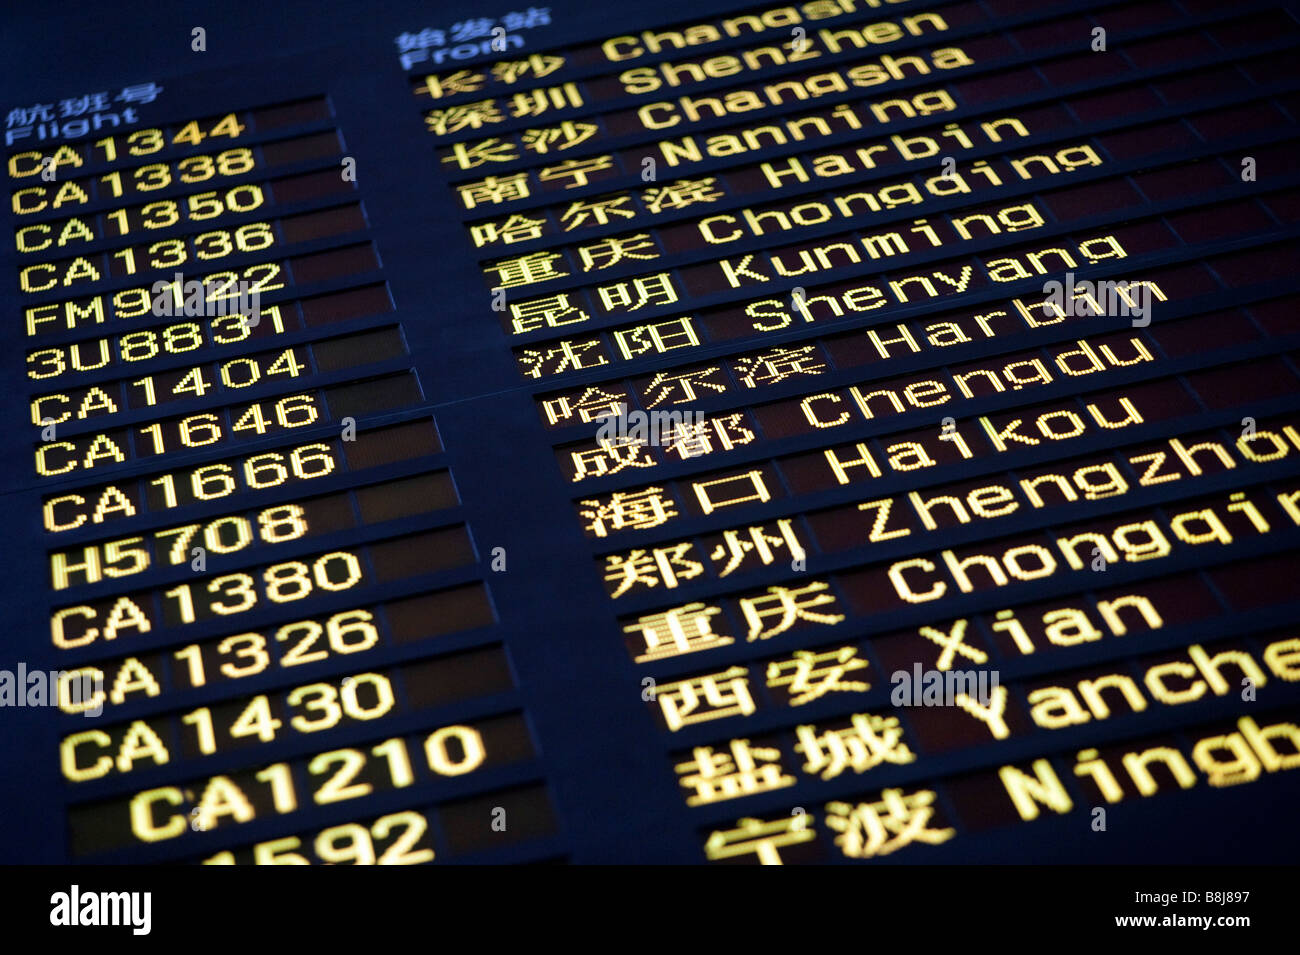 Información de vuelos llegadas de vuelos internos de la placa de la pantalla electrónica en la nueva Terminal 3 del aeropuerto de Beijing China 2009 Foto de stock